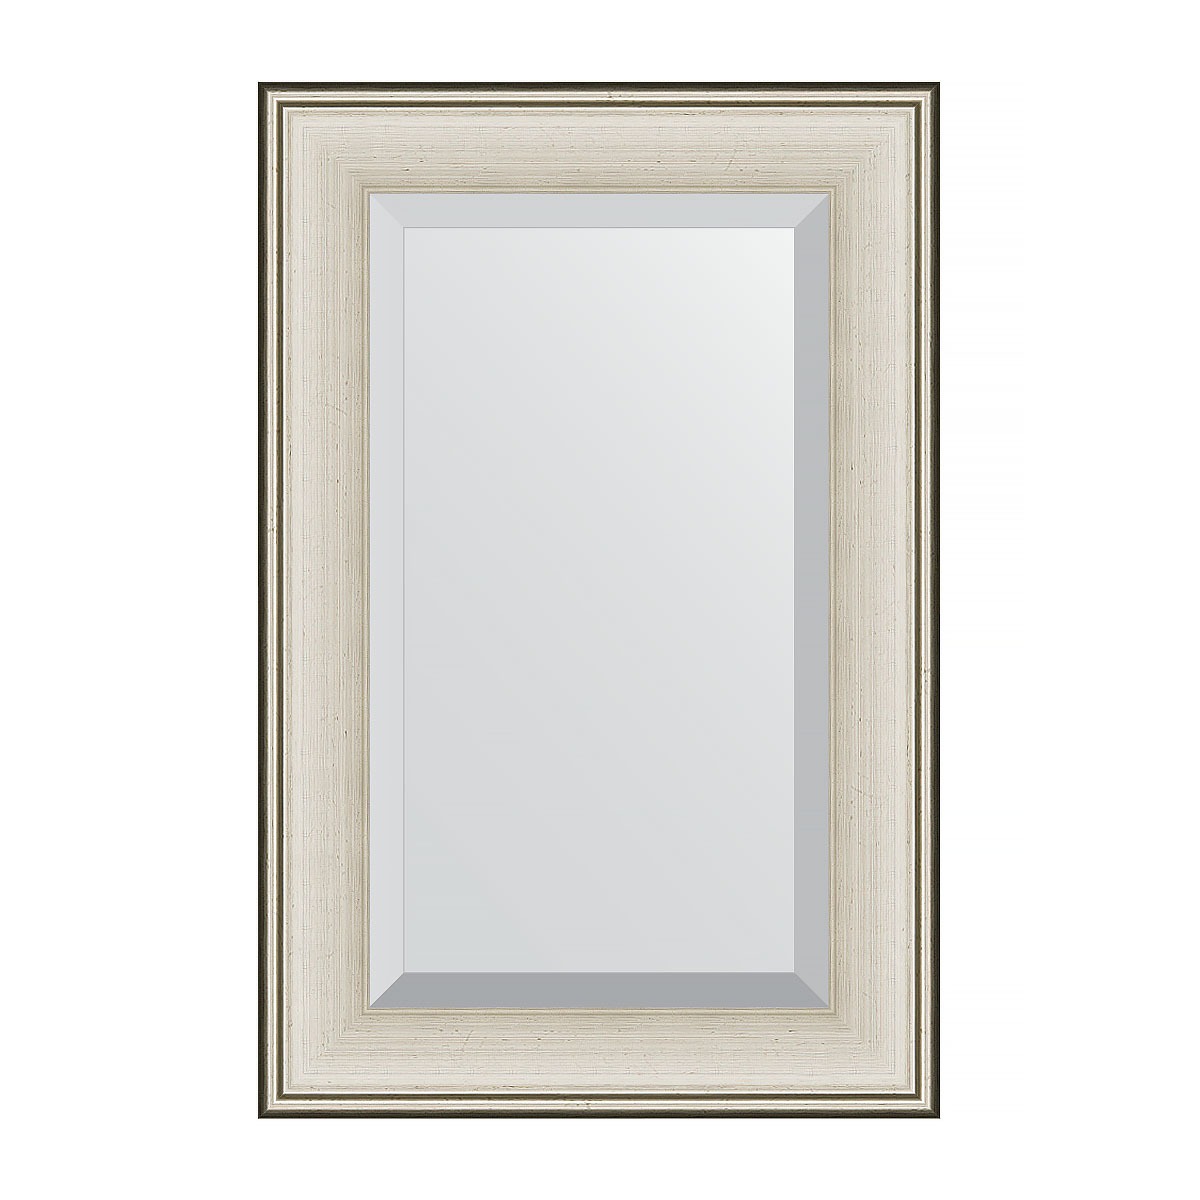 Зеркало с фацетом в багетной раме Evoform травленое серебро 95 мм 58х88 см зеркало напольное с фацетом в багетной раме evoform римское серебро 88 мм 81x201 см